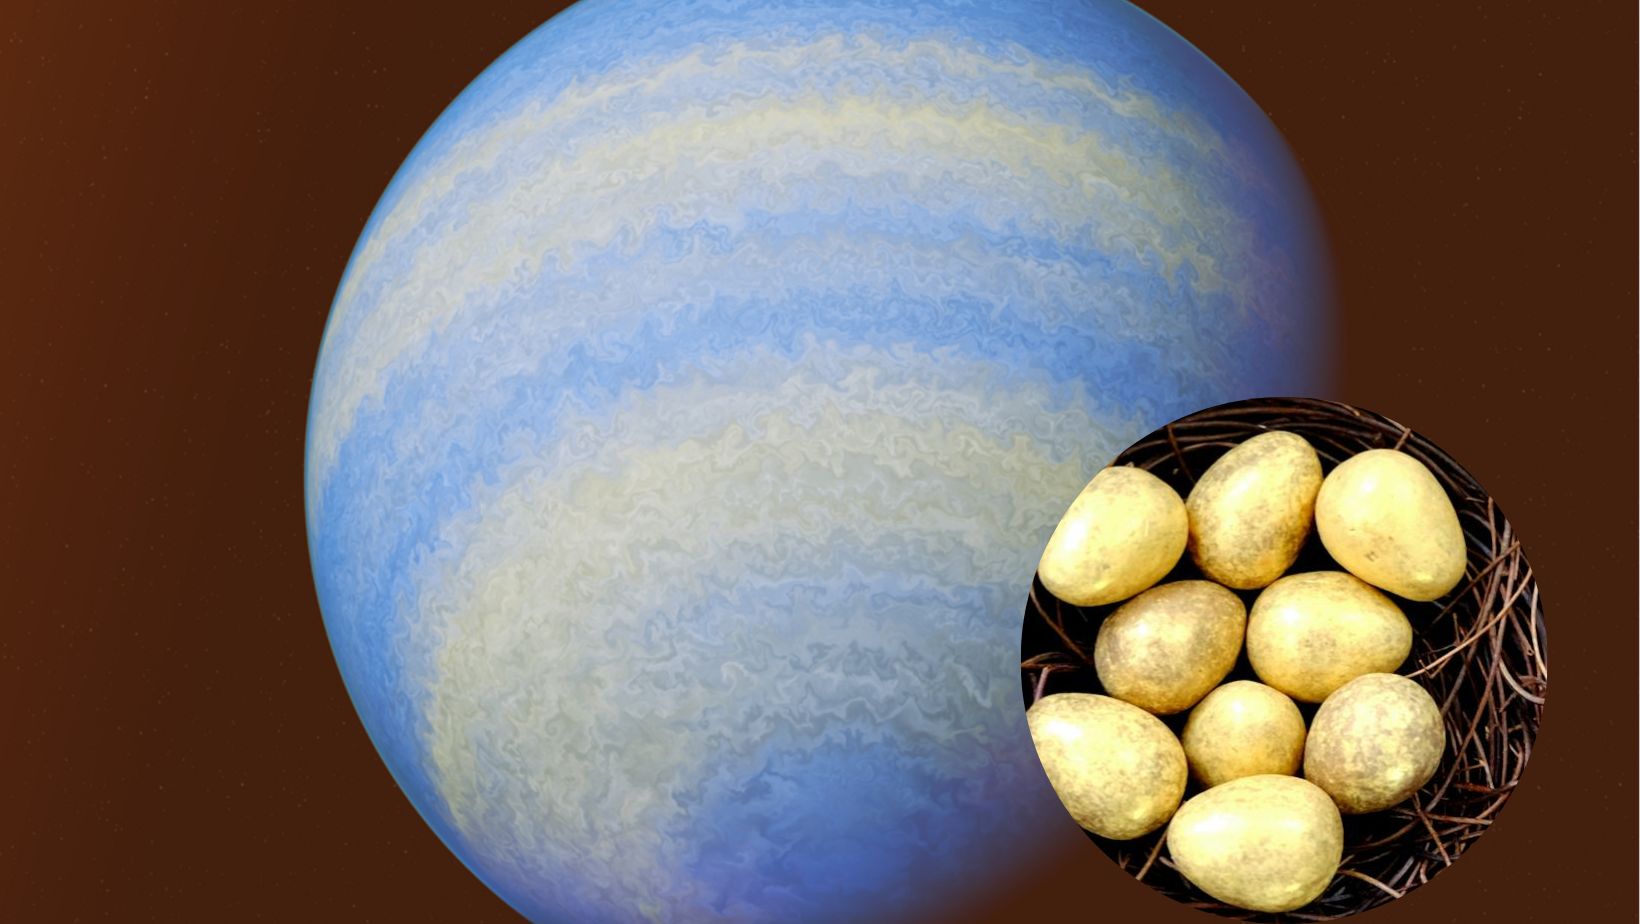 ¿Un exoplaneta que huele a huevo podrido? Así es el “Júpiter caliente”, según investigadores